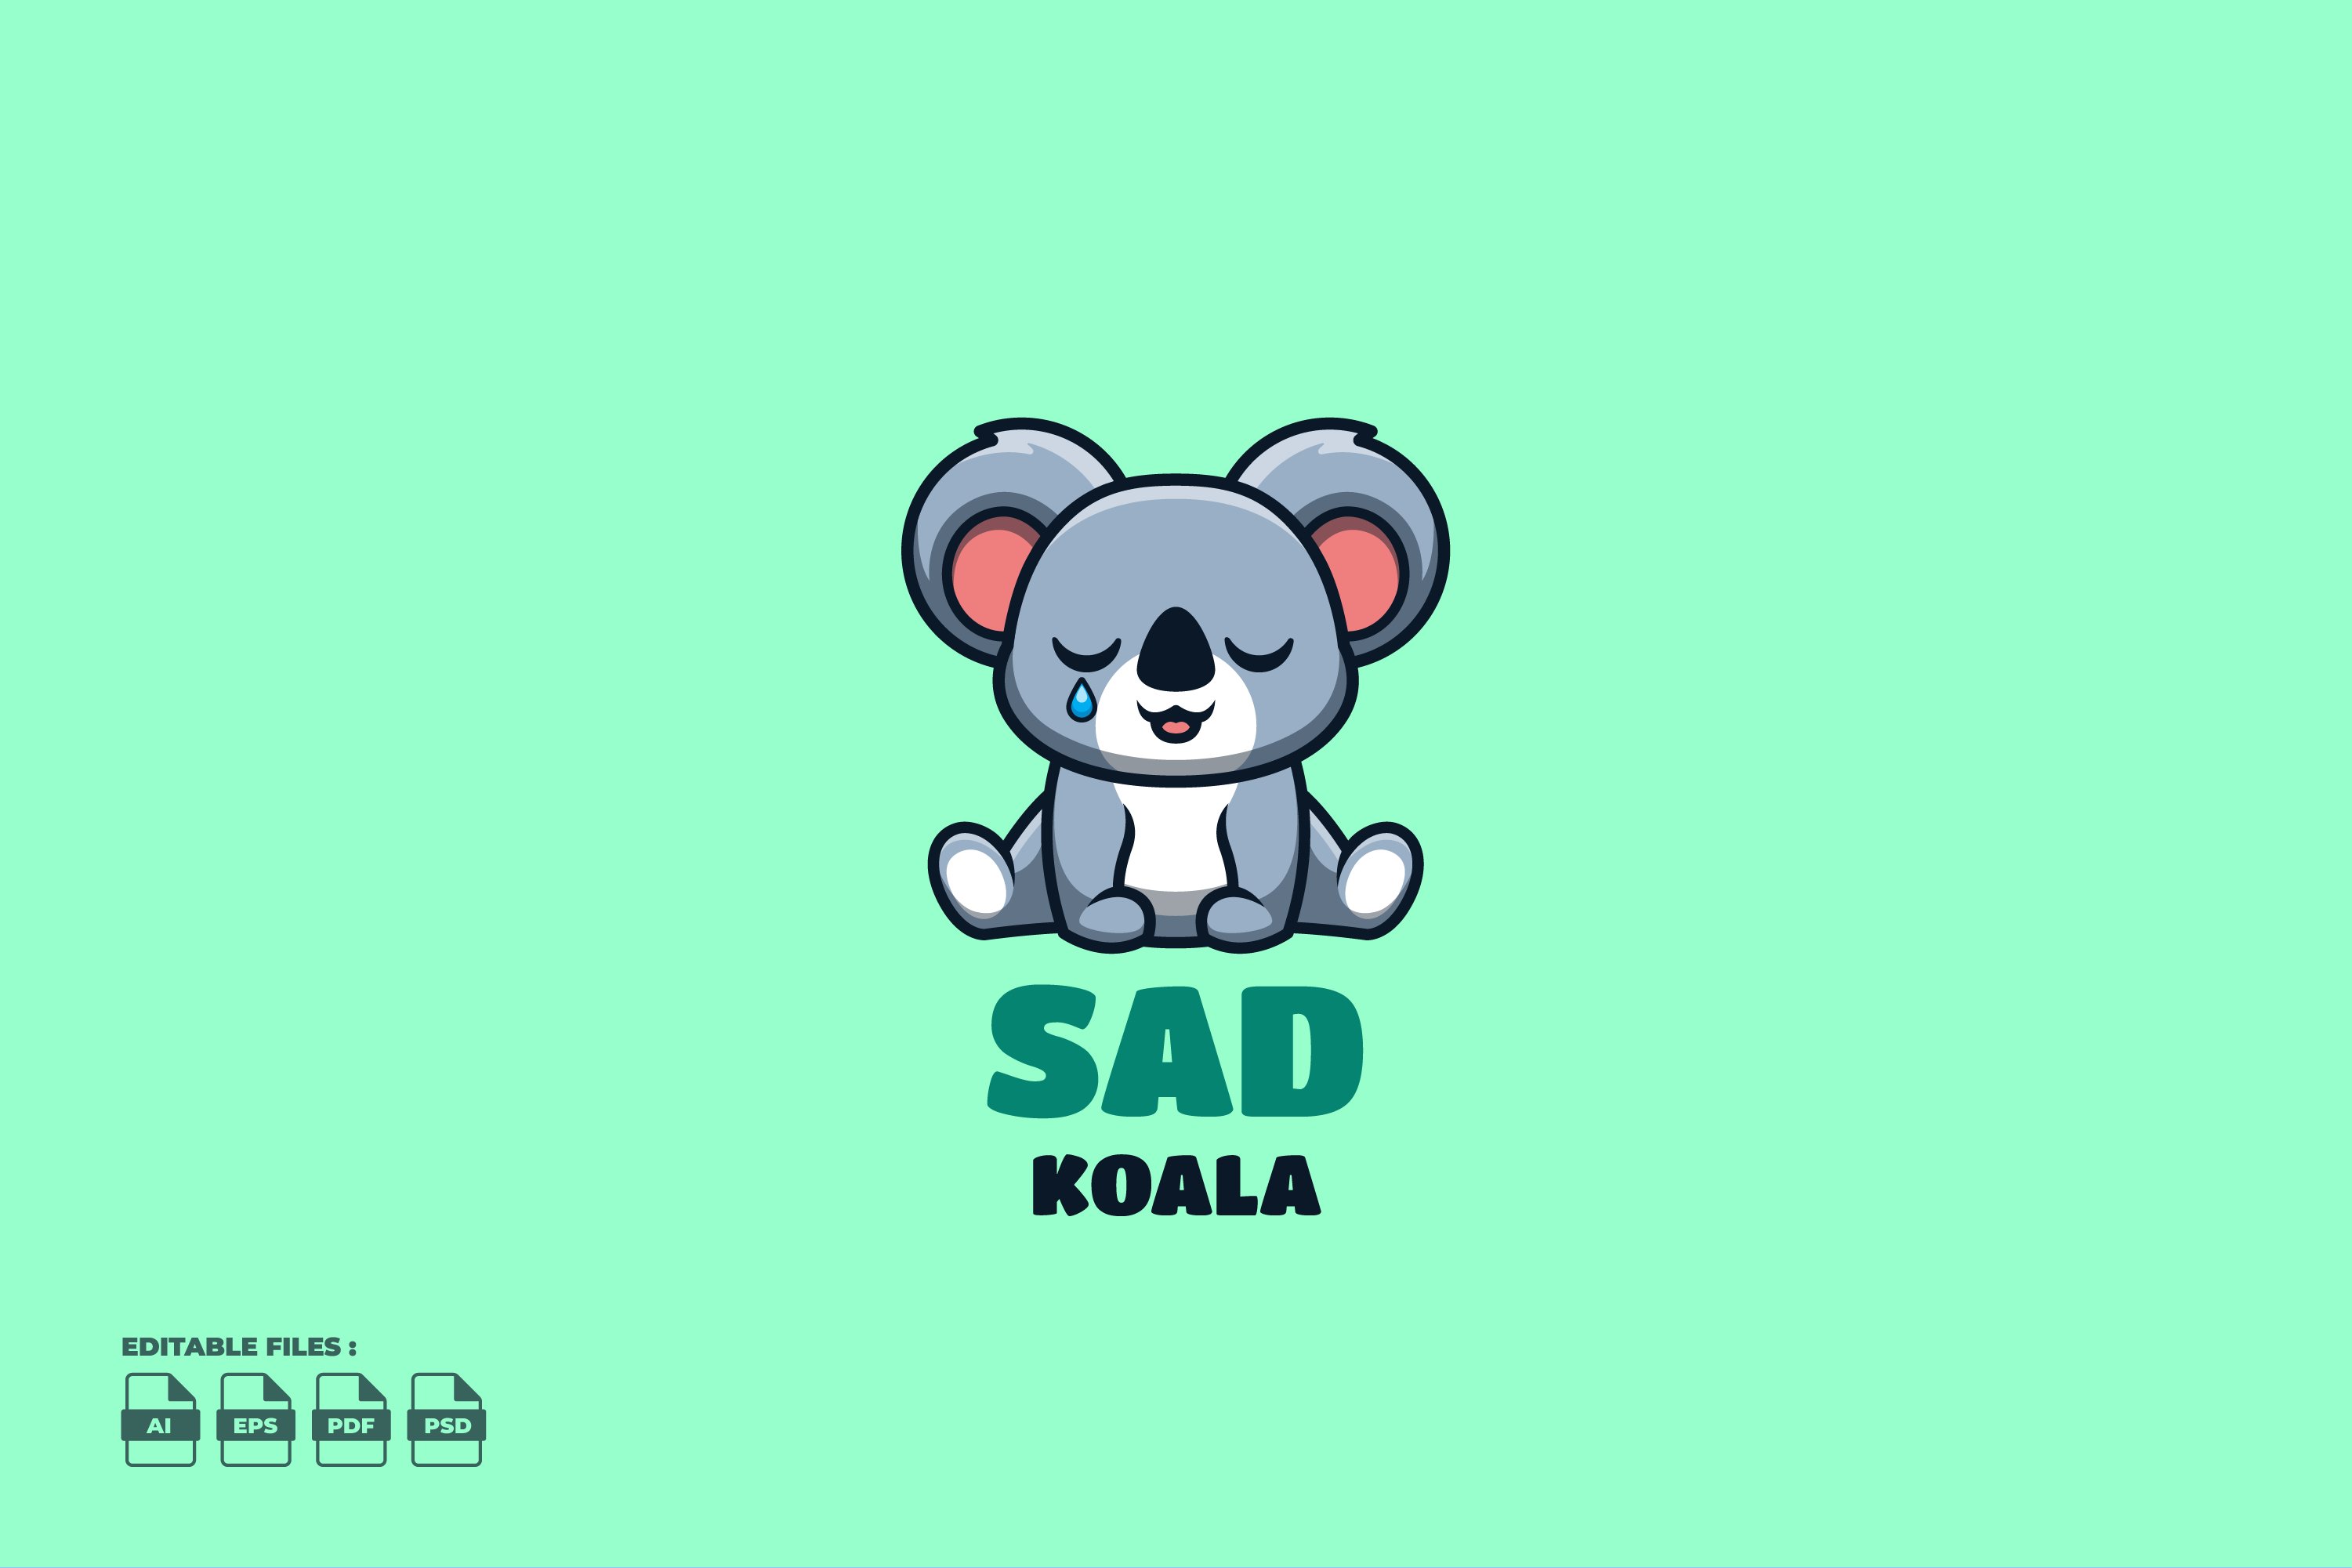 Sad Koala Cute Mascot Logo cover image.